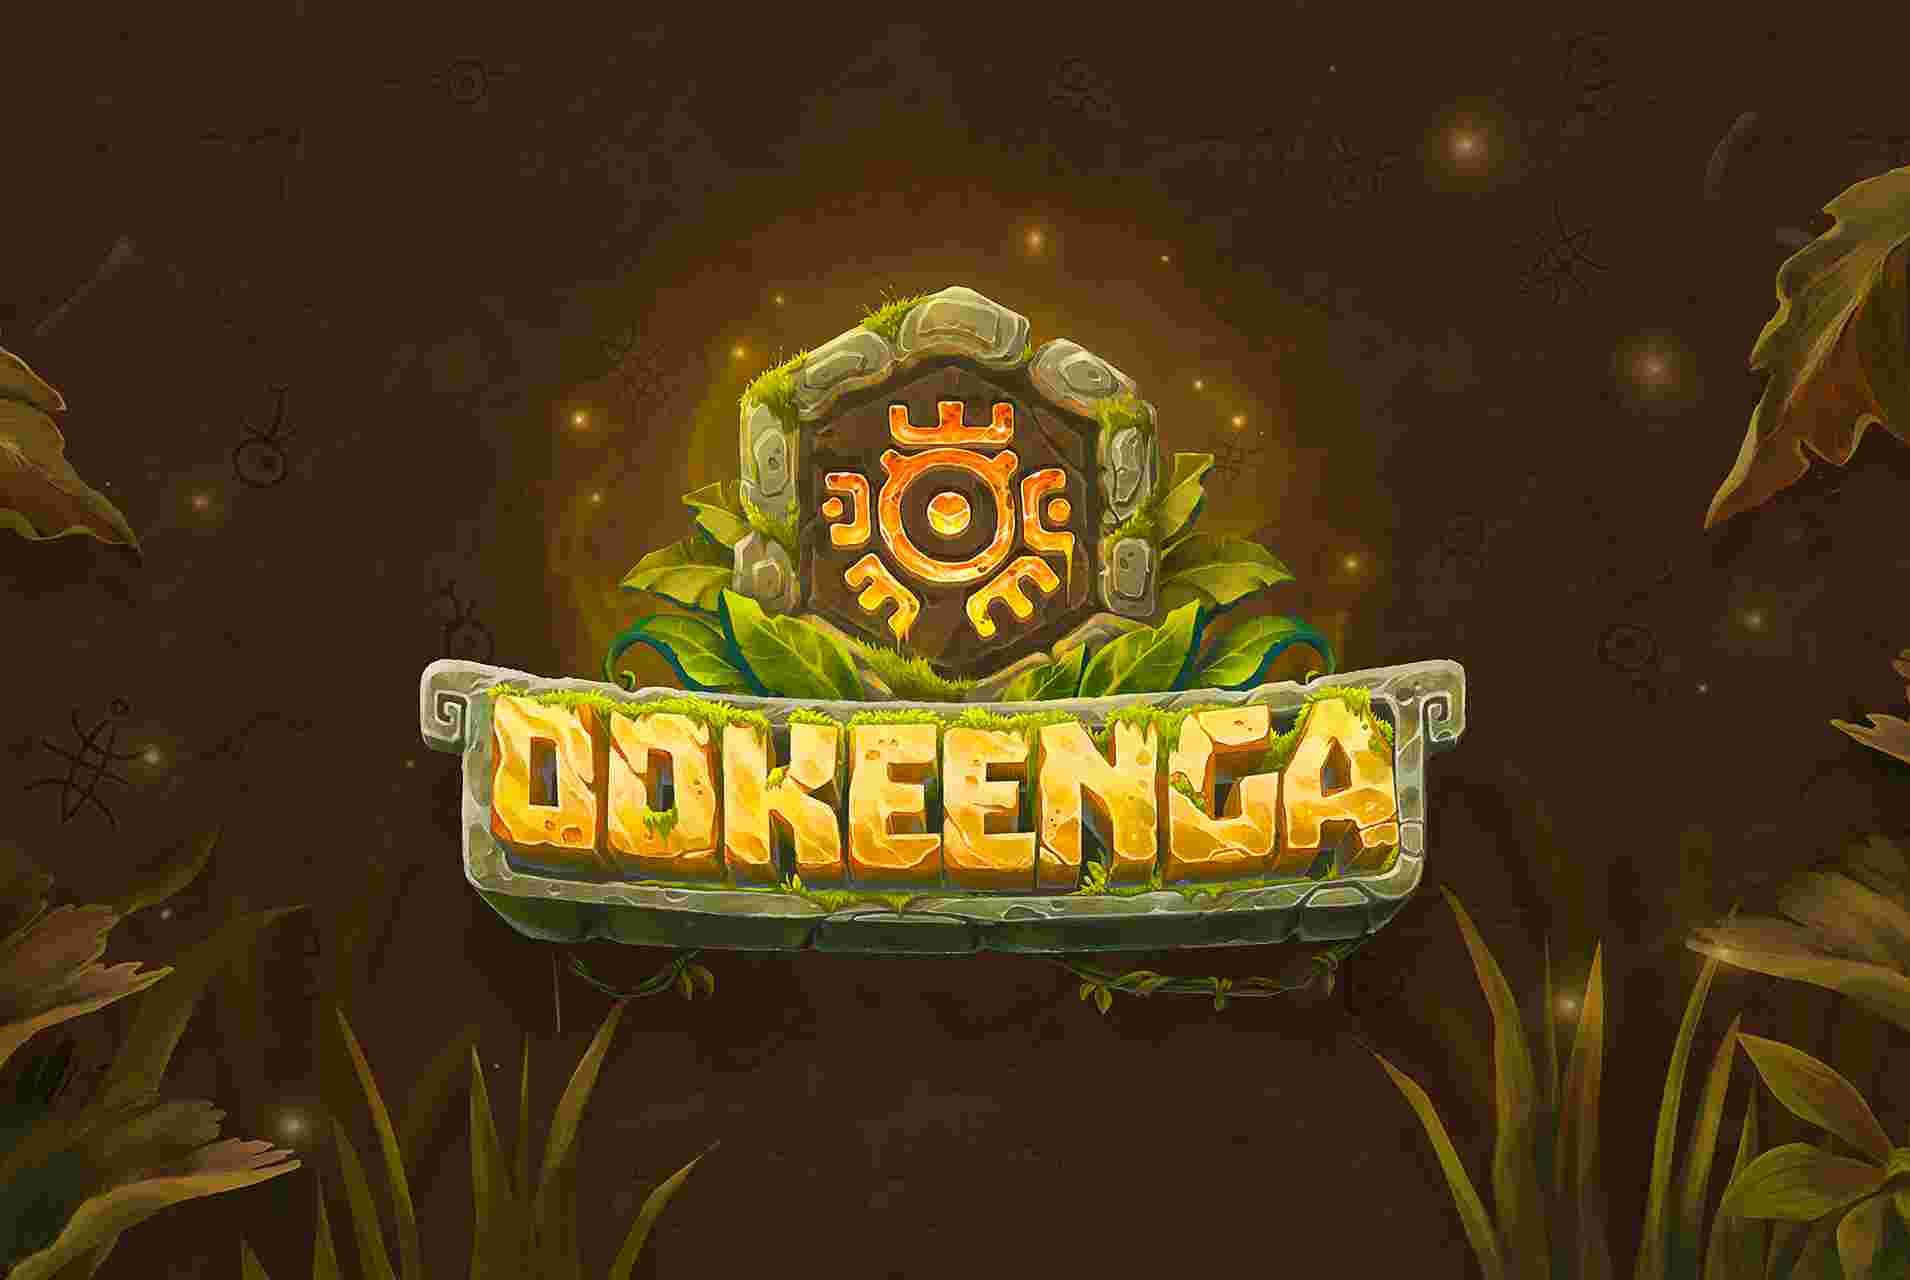 Ookeenga (OKG) - Análise do jogo